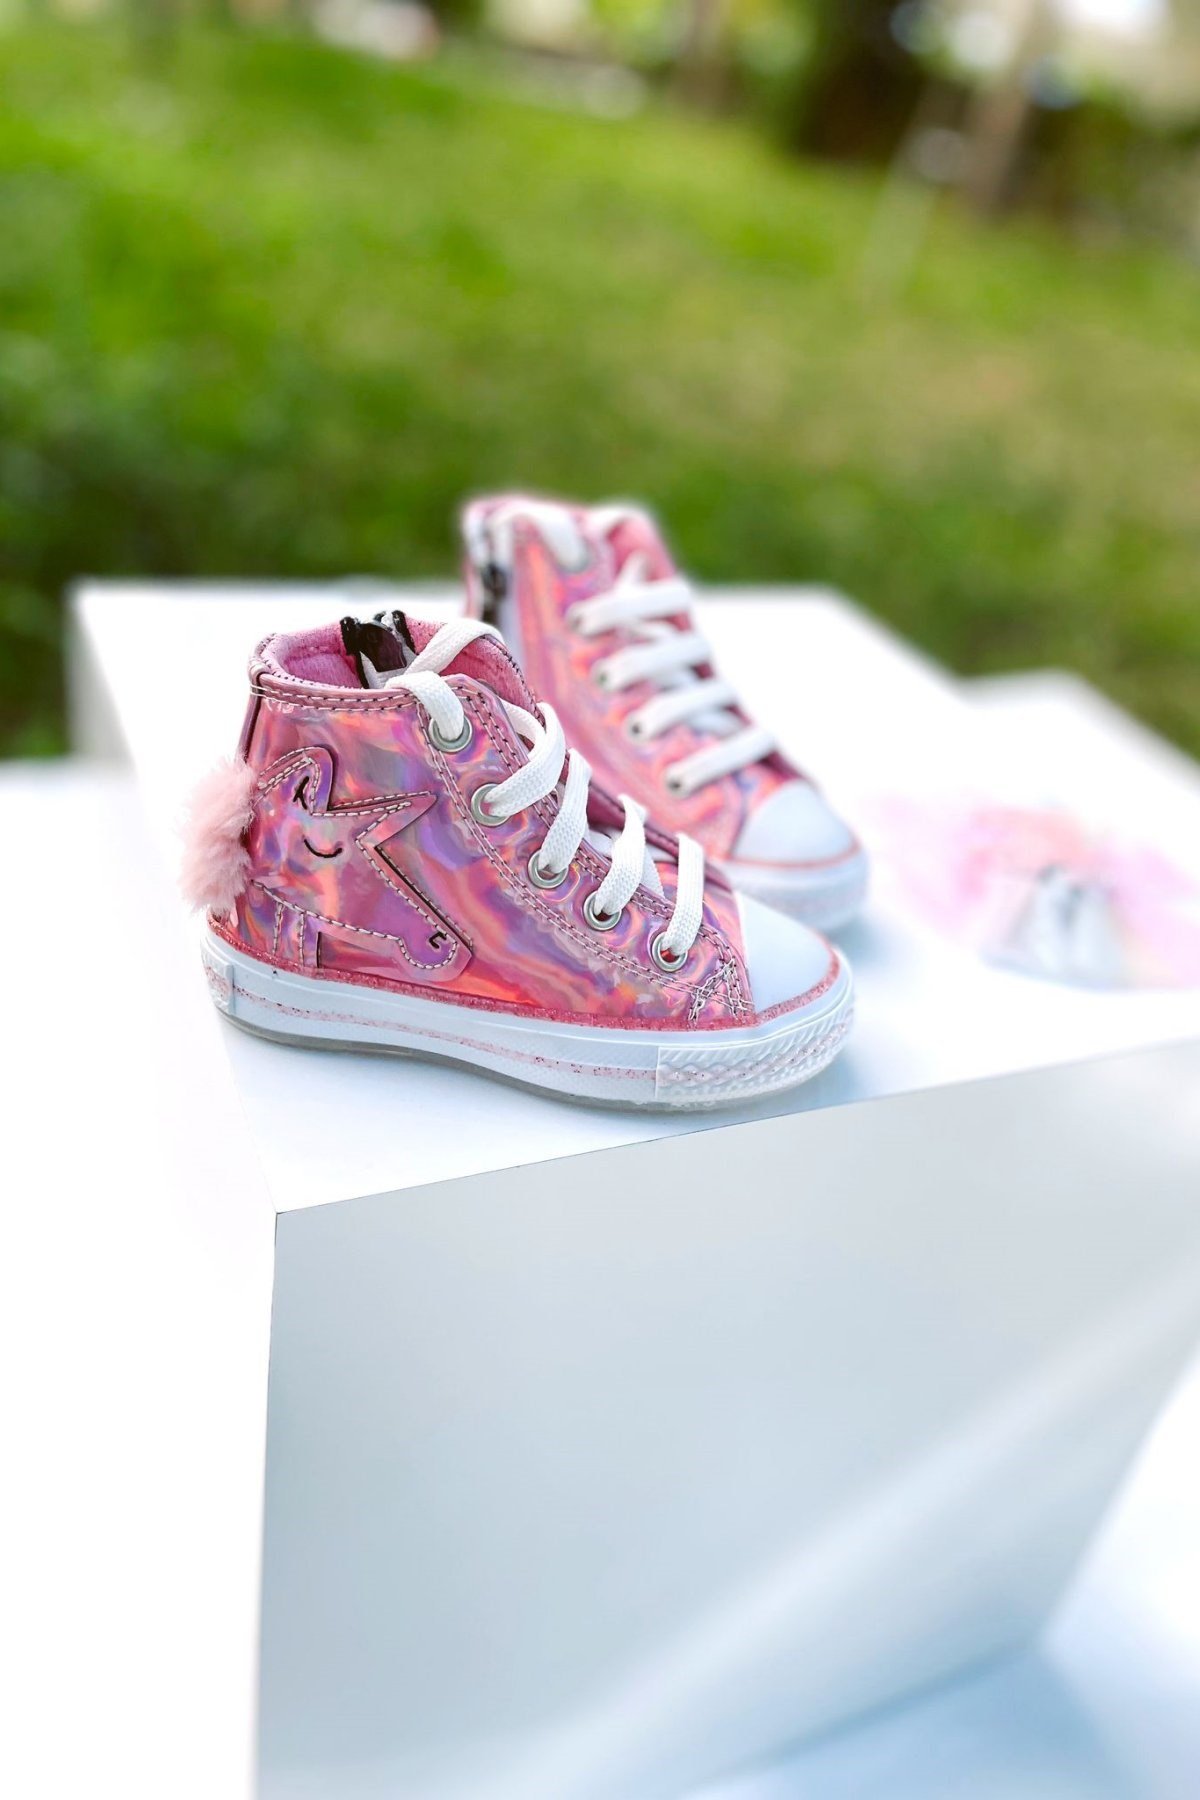 Pembe Unicorn Desenli Bilekli Işıklı Spor Ayakkabı – Moona Kids